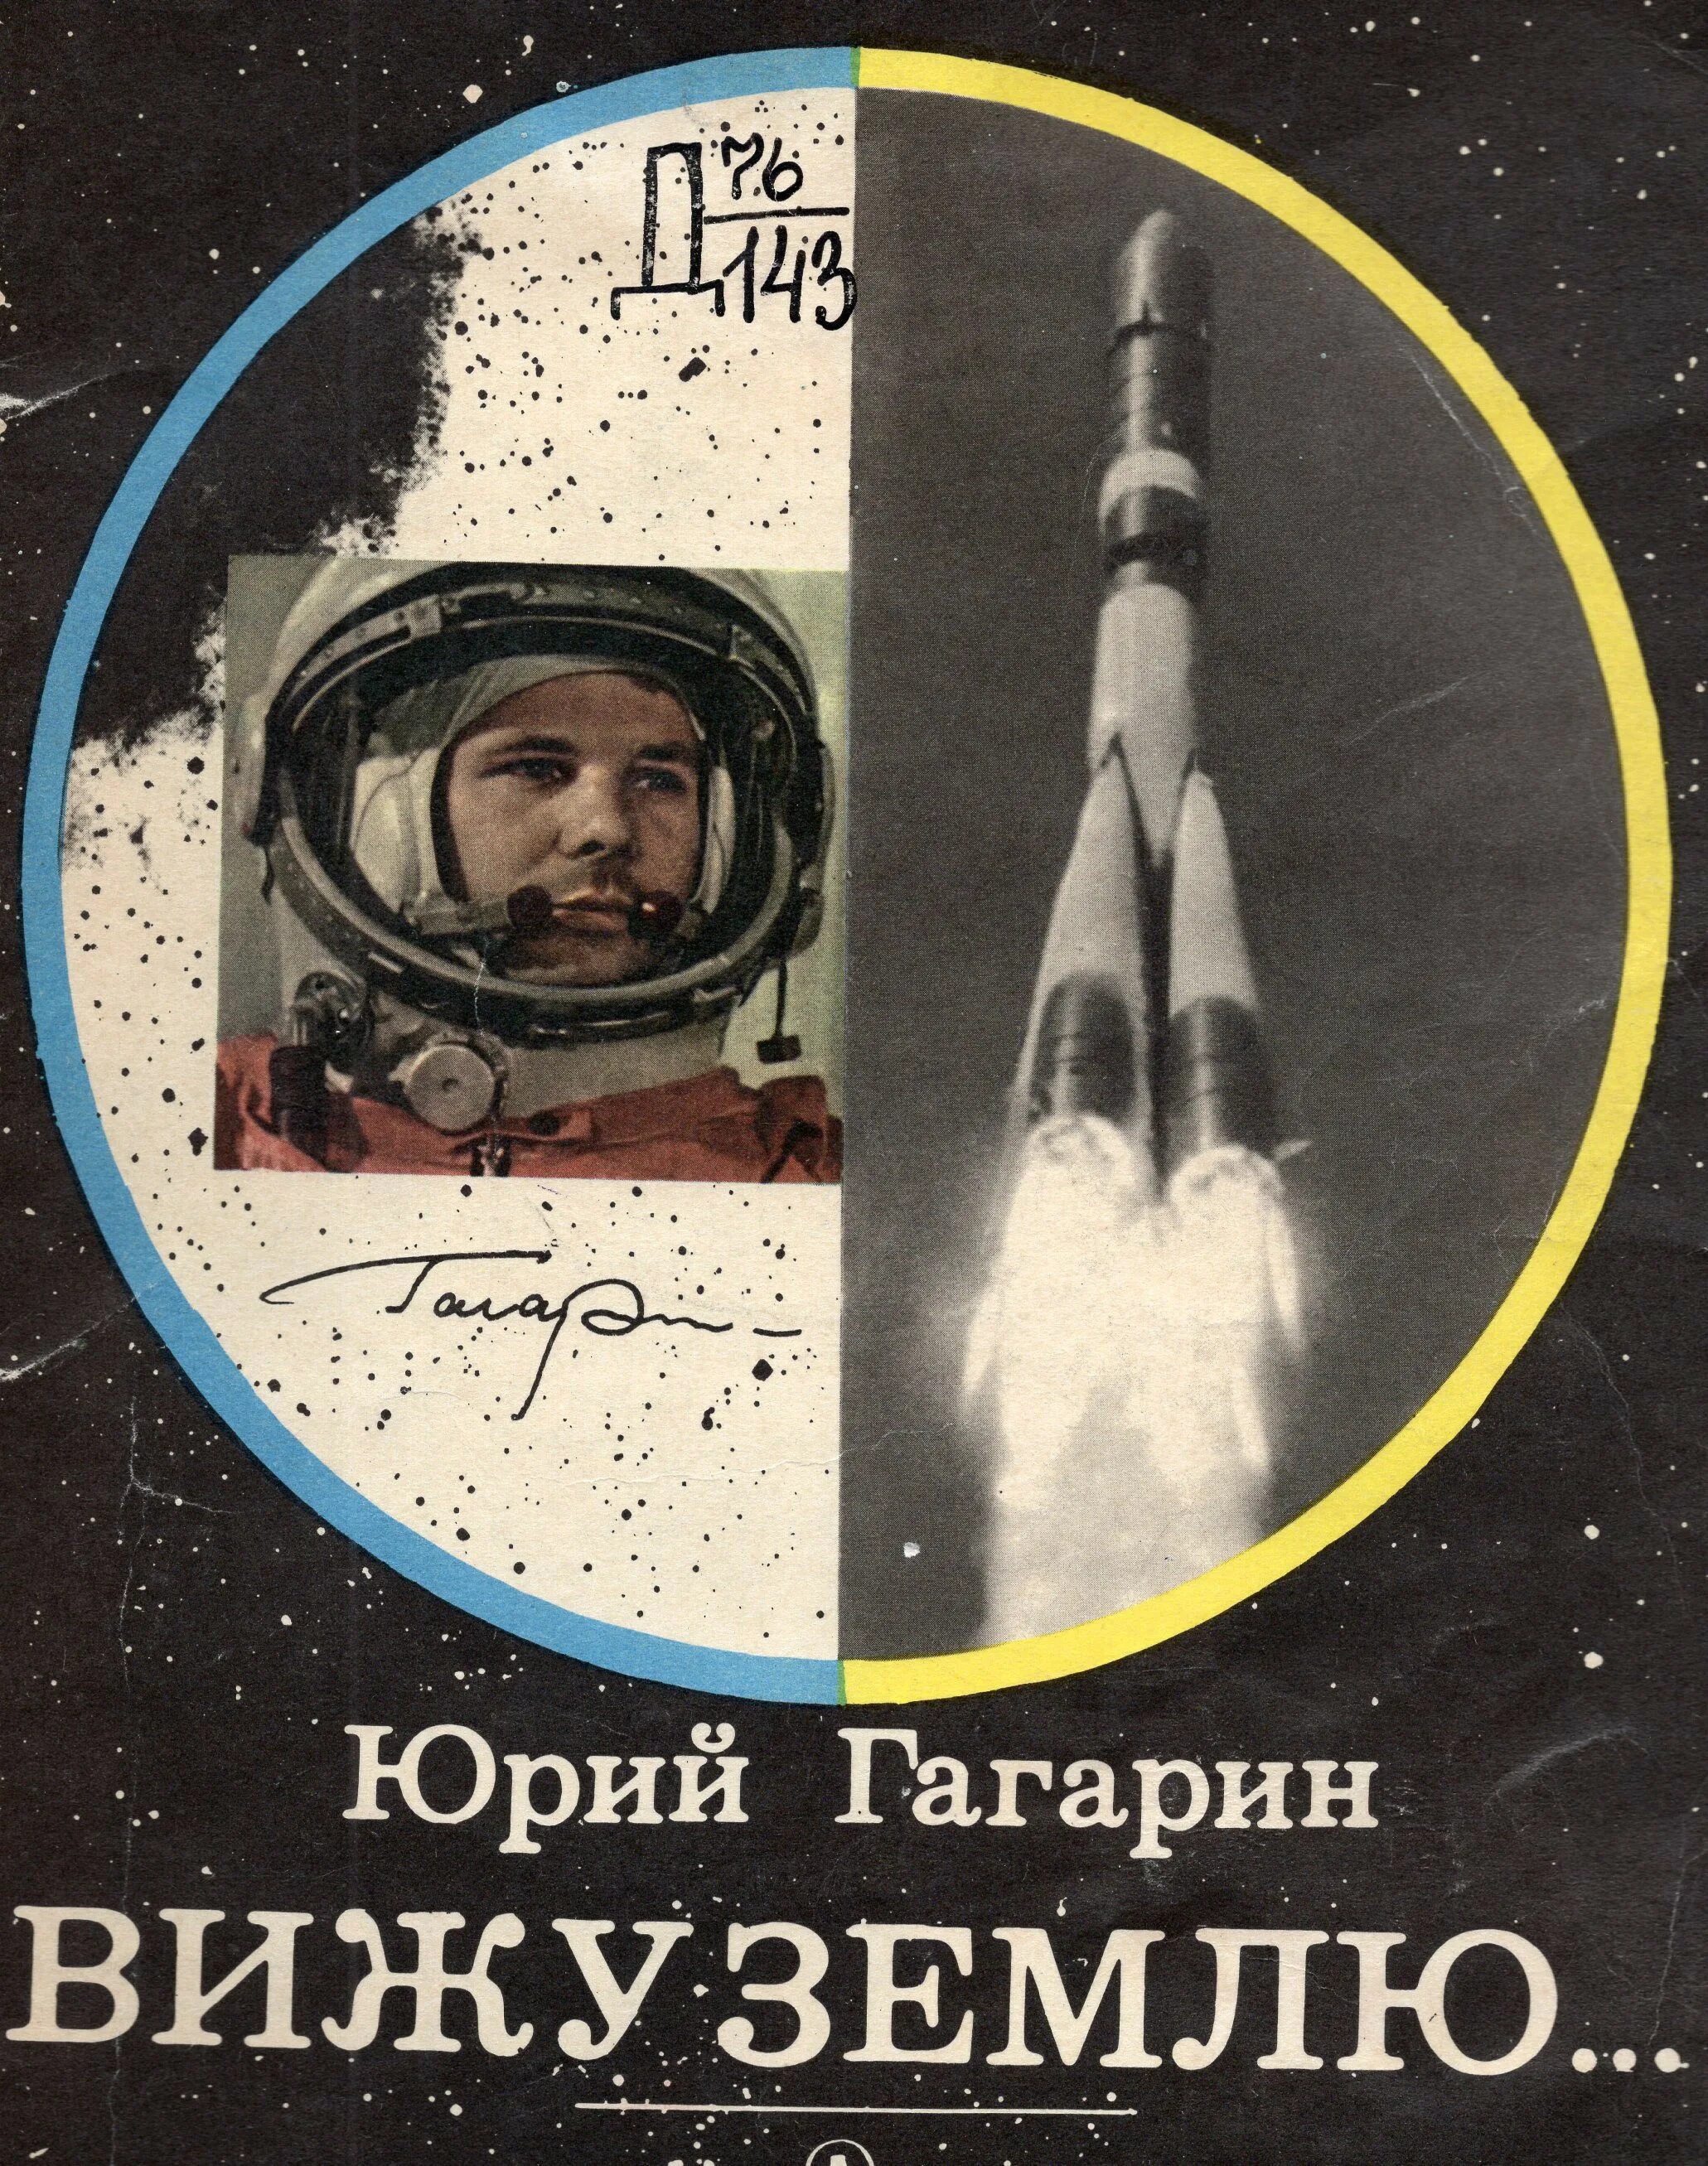 Первый полет в космос для детей. Книга вижу землю ю.Гагарин. Книги о Юрии Гагарине для детей.